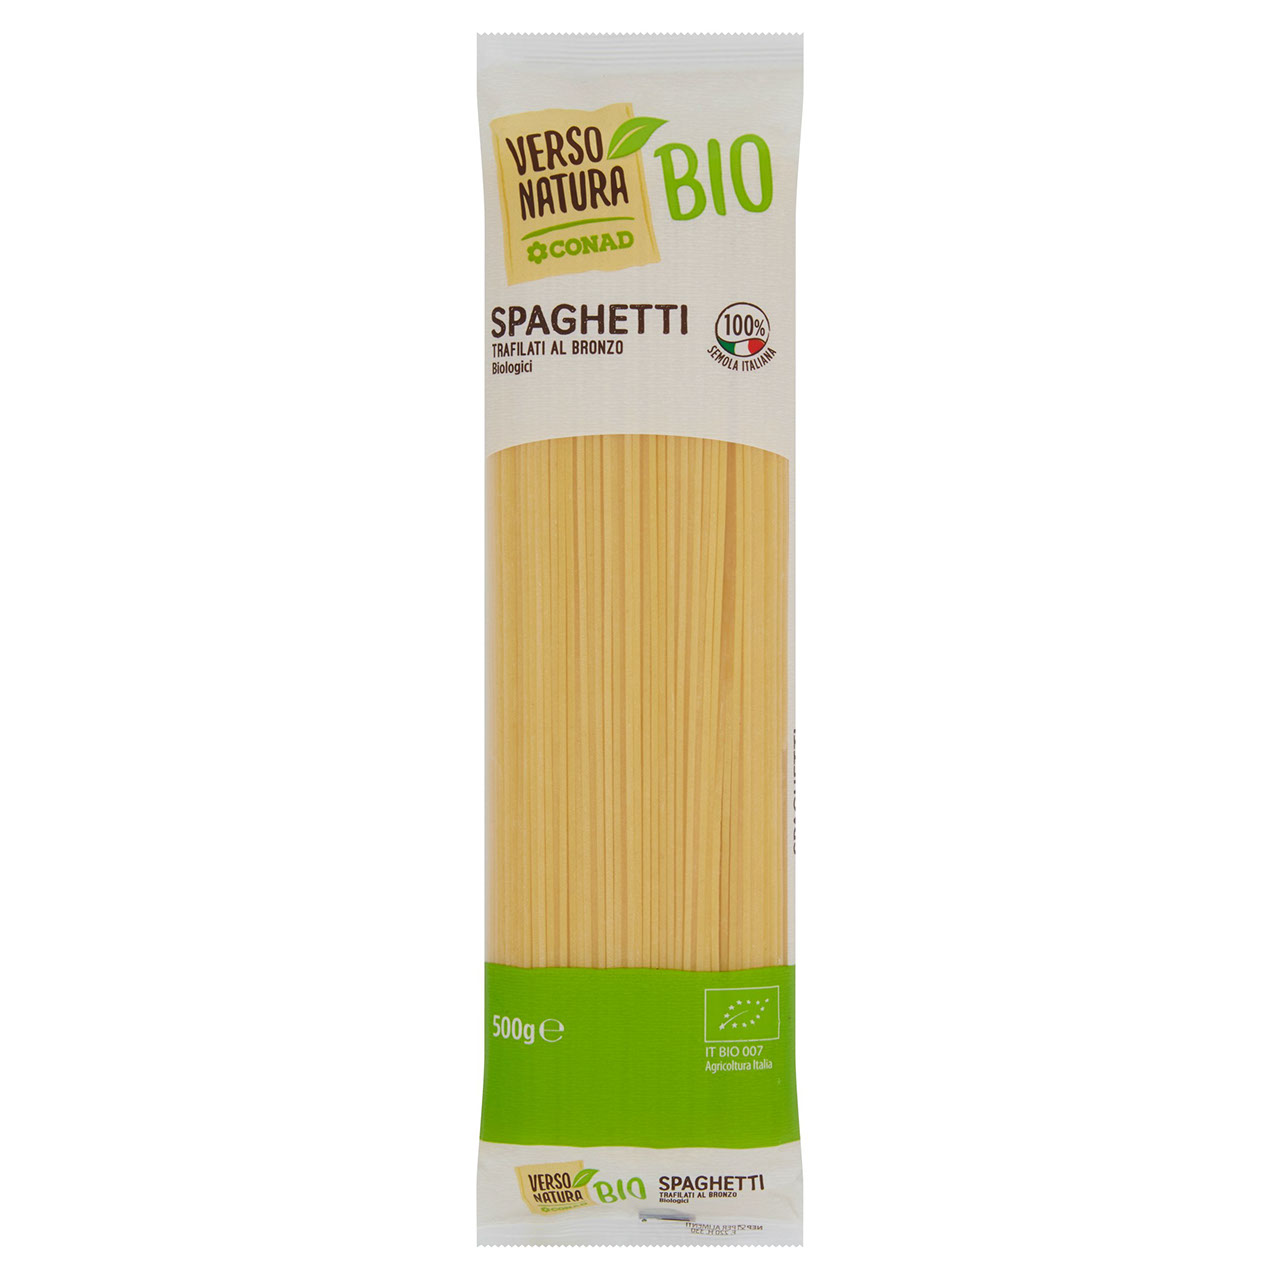 CONAD VERSO NATURA Bio Spaghetti Biologici 500 g